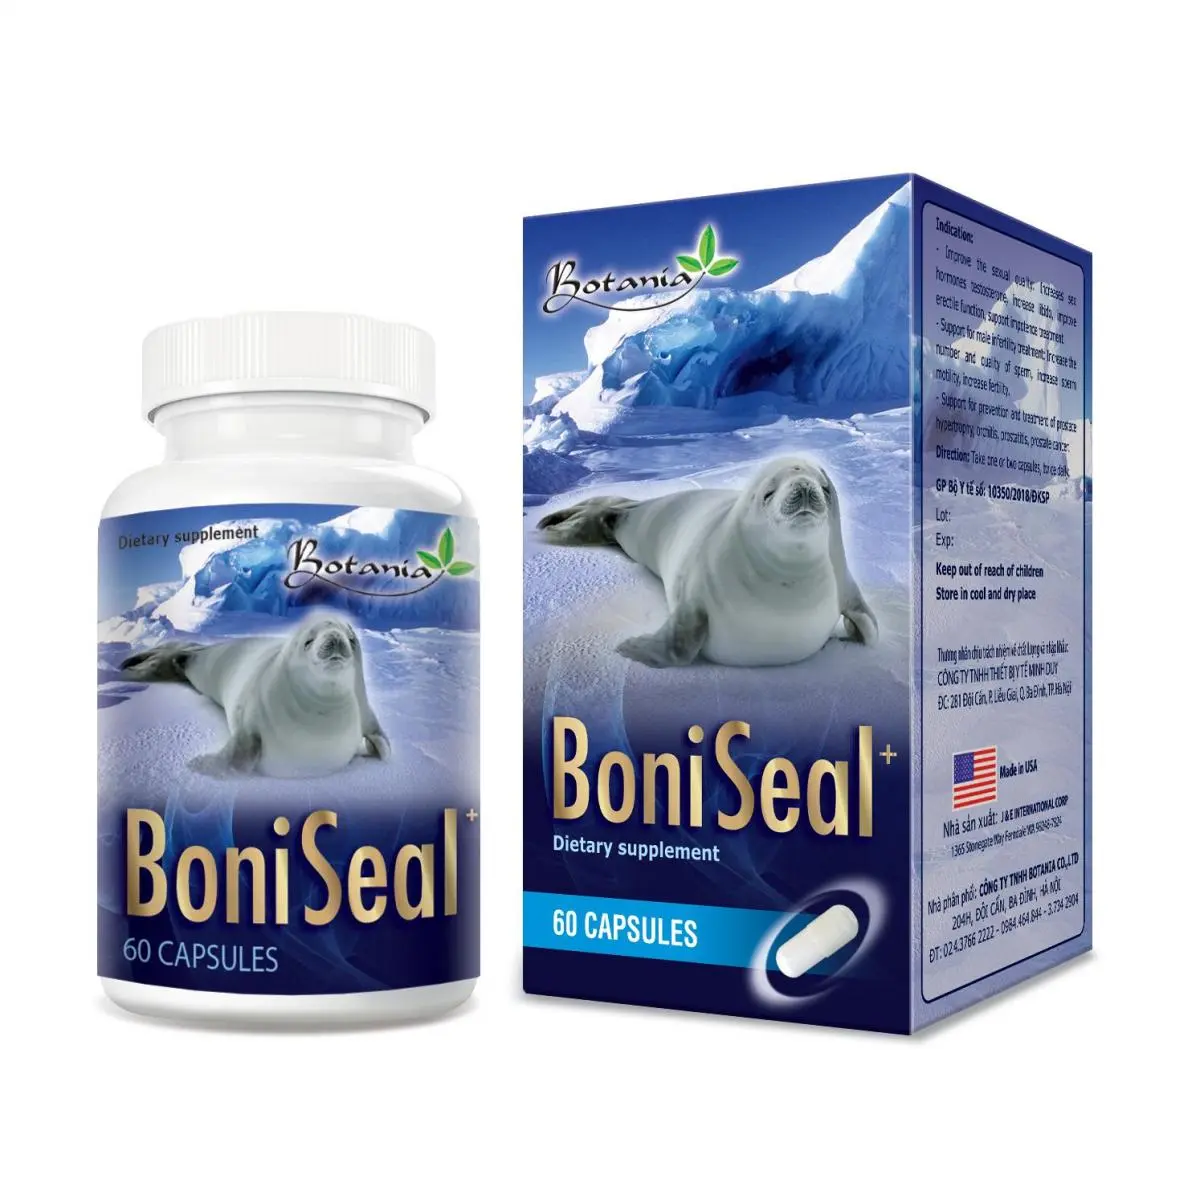 BoniSeal+ (Made in USA) - Bí quyết bổ thận, tăng cường sức khỏe và sinh lý cho nam giới